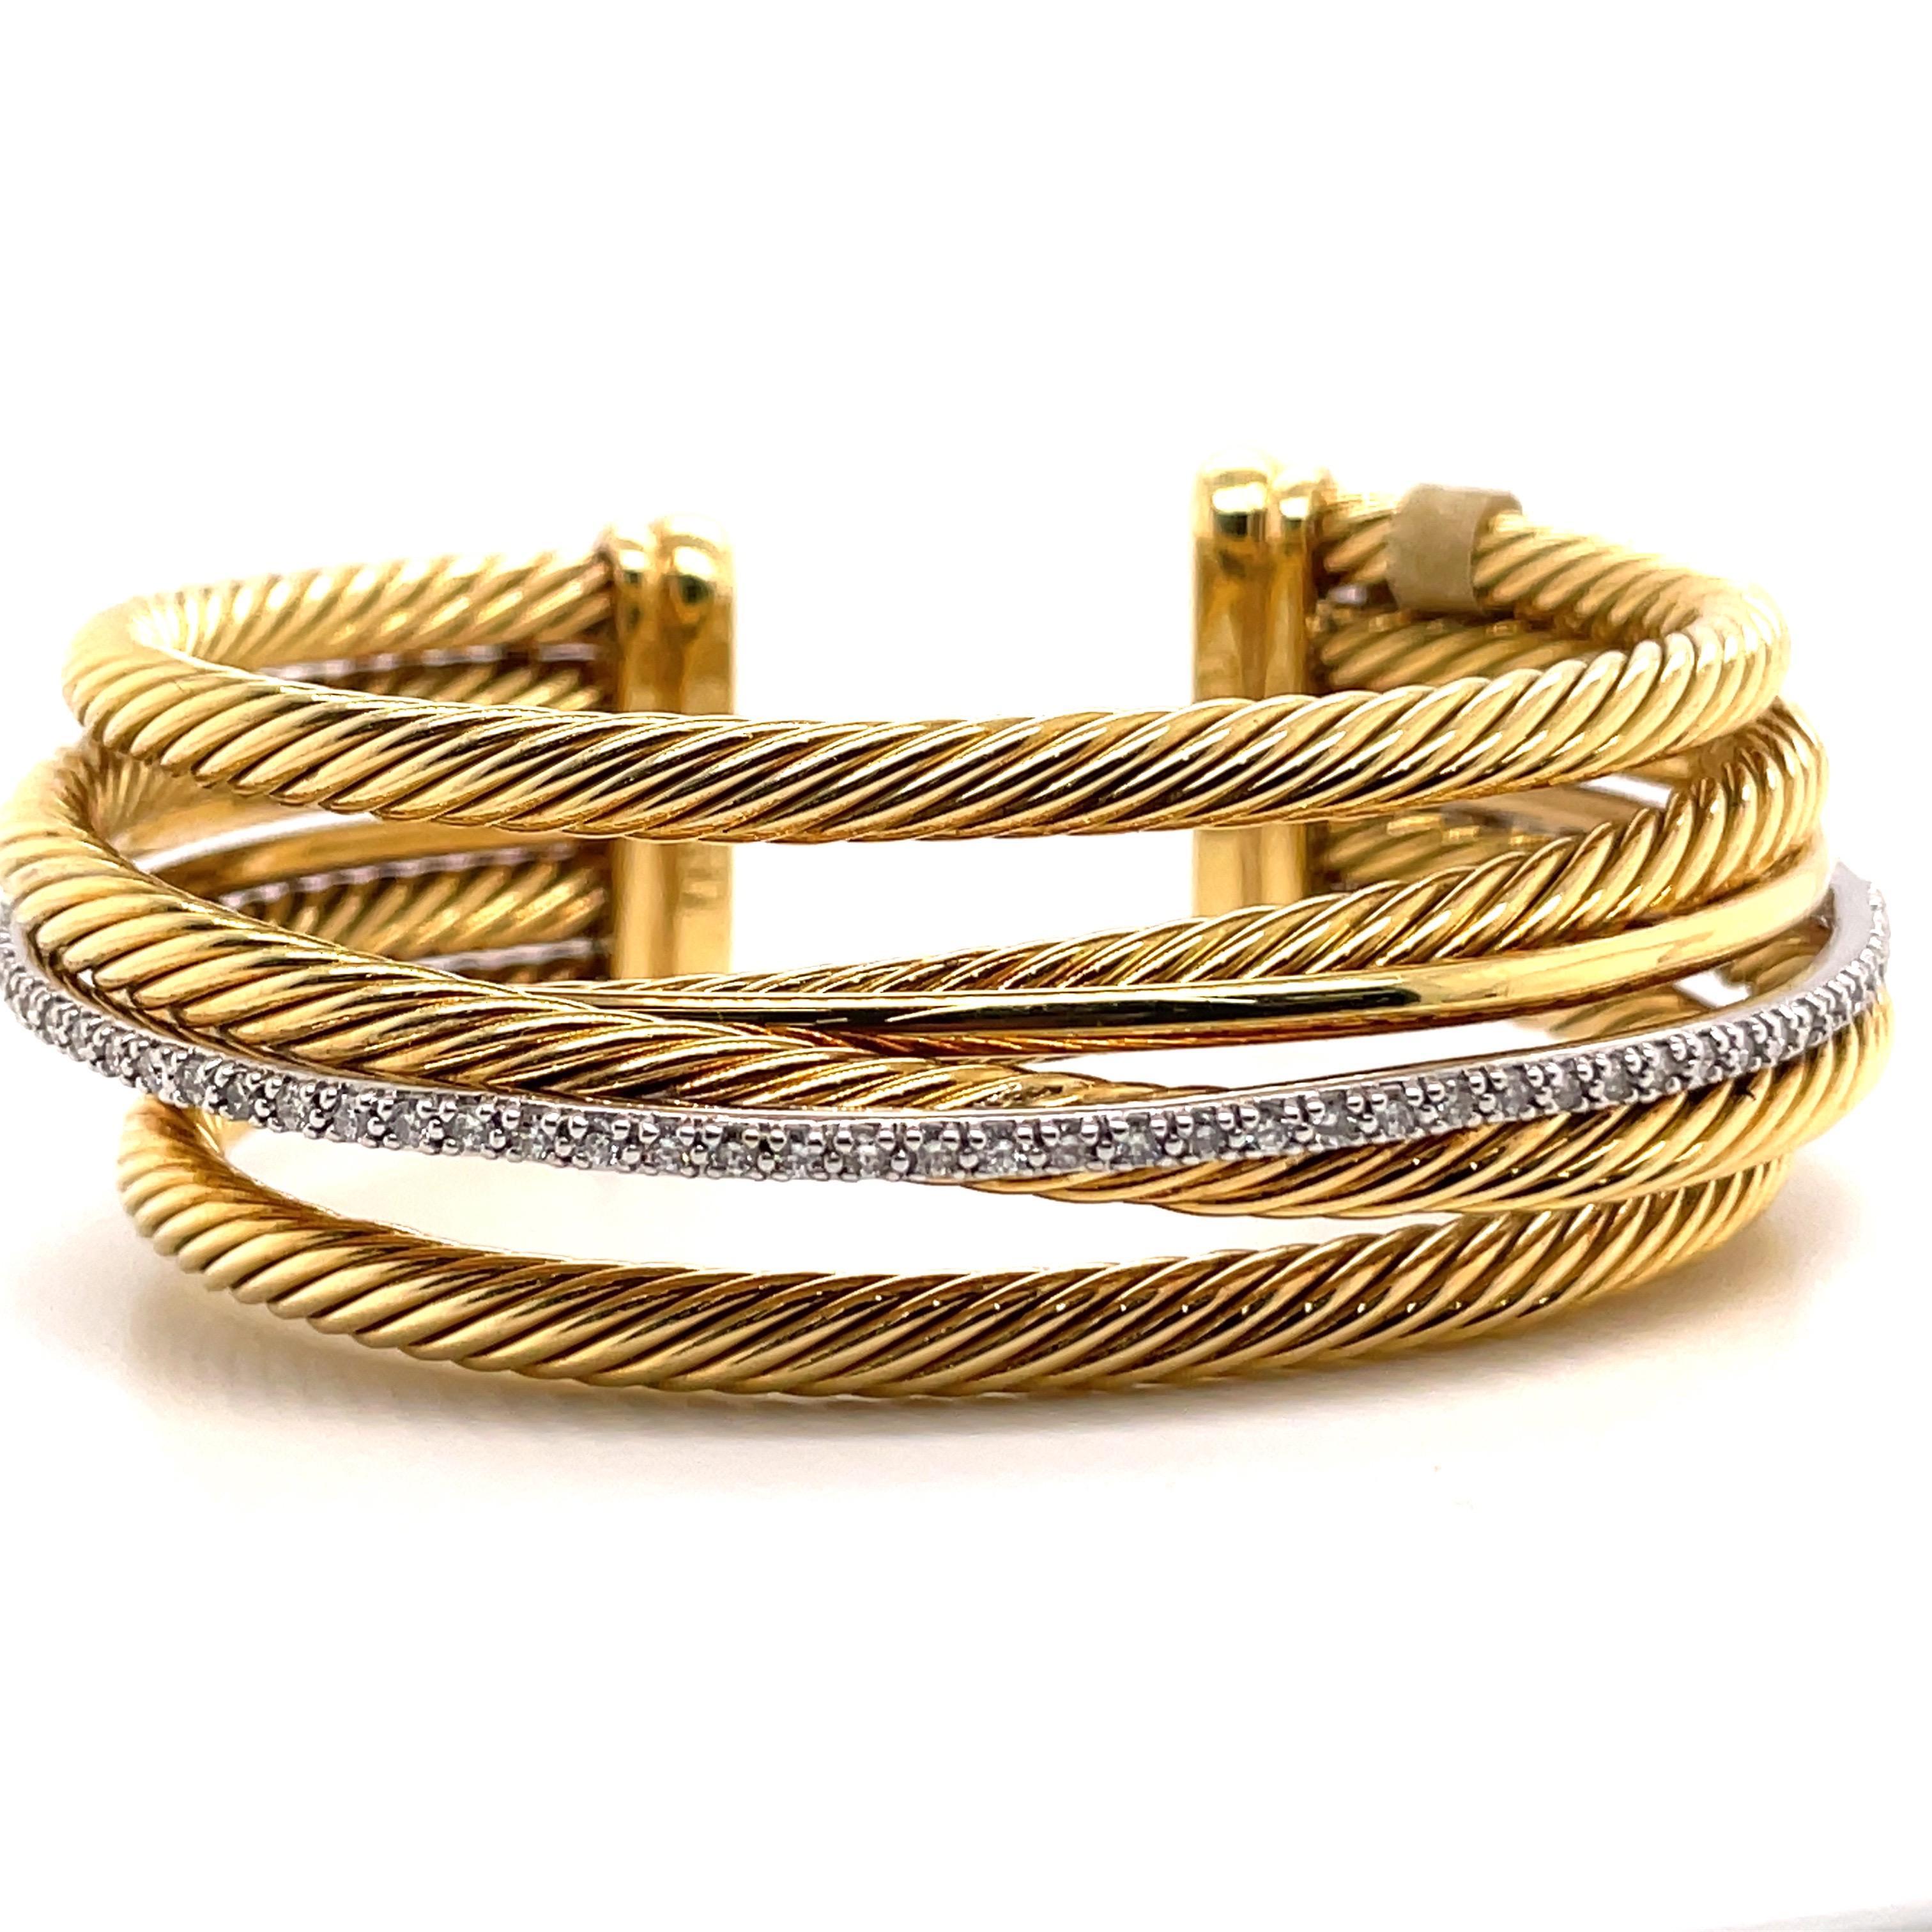 Issu de la collection Crossover, ce bracelet David Yurman comporte 4 cordons torsadés croisés, un cordon poli et une rangée de diamants, en or jaune 18 carats. 
81.7 grammes